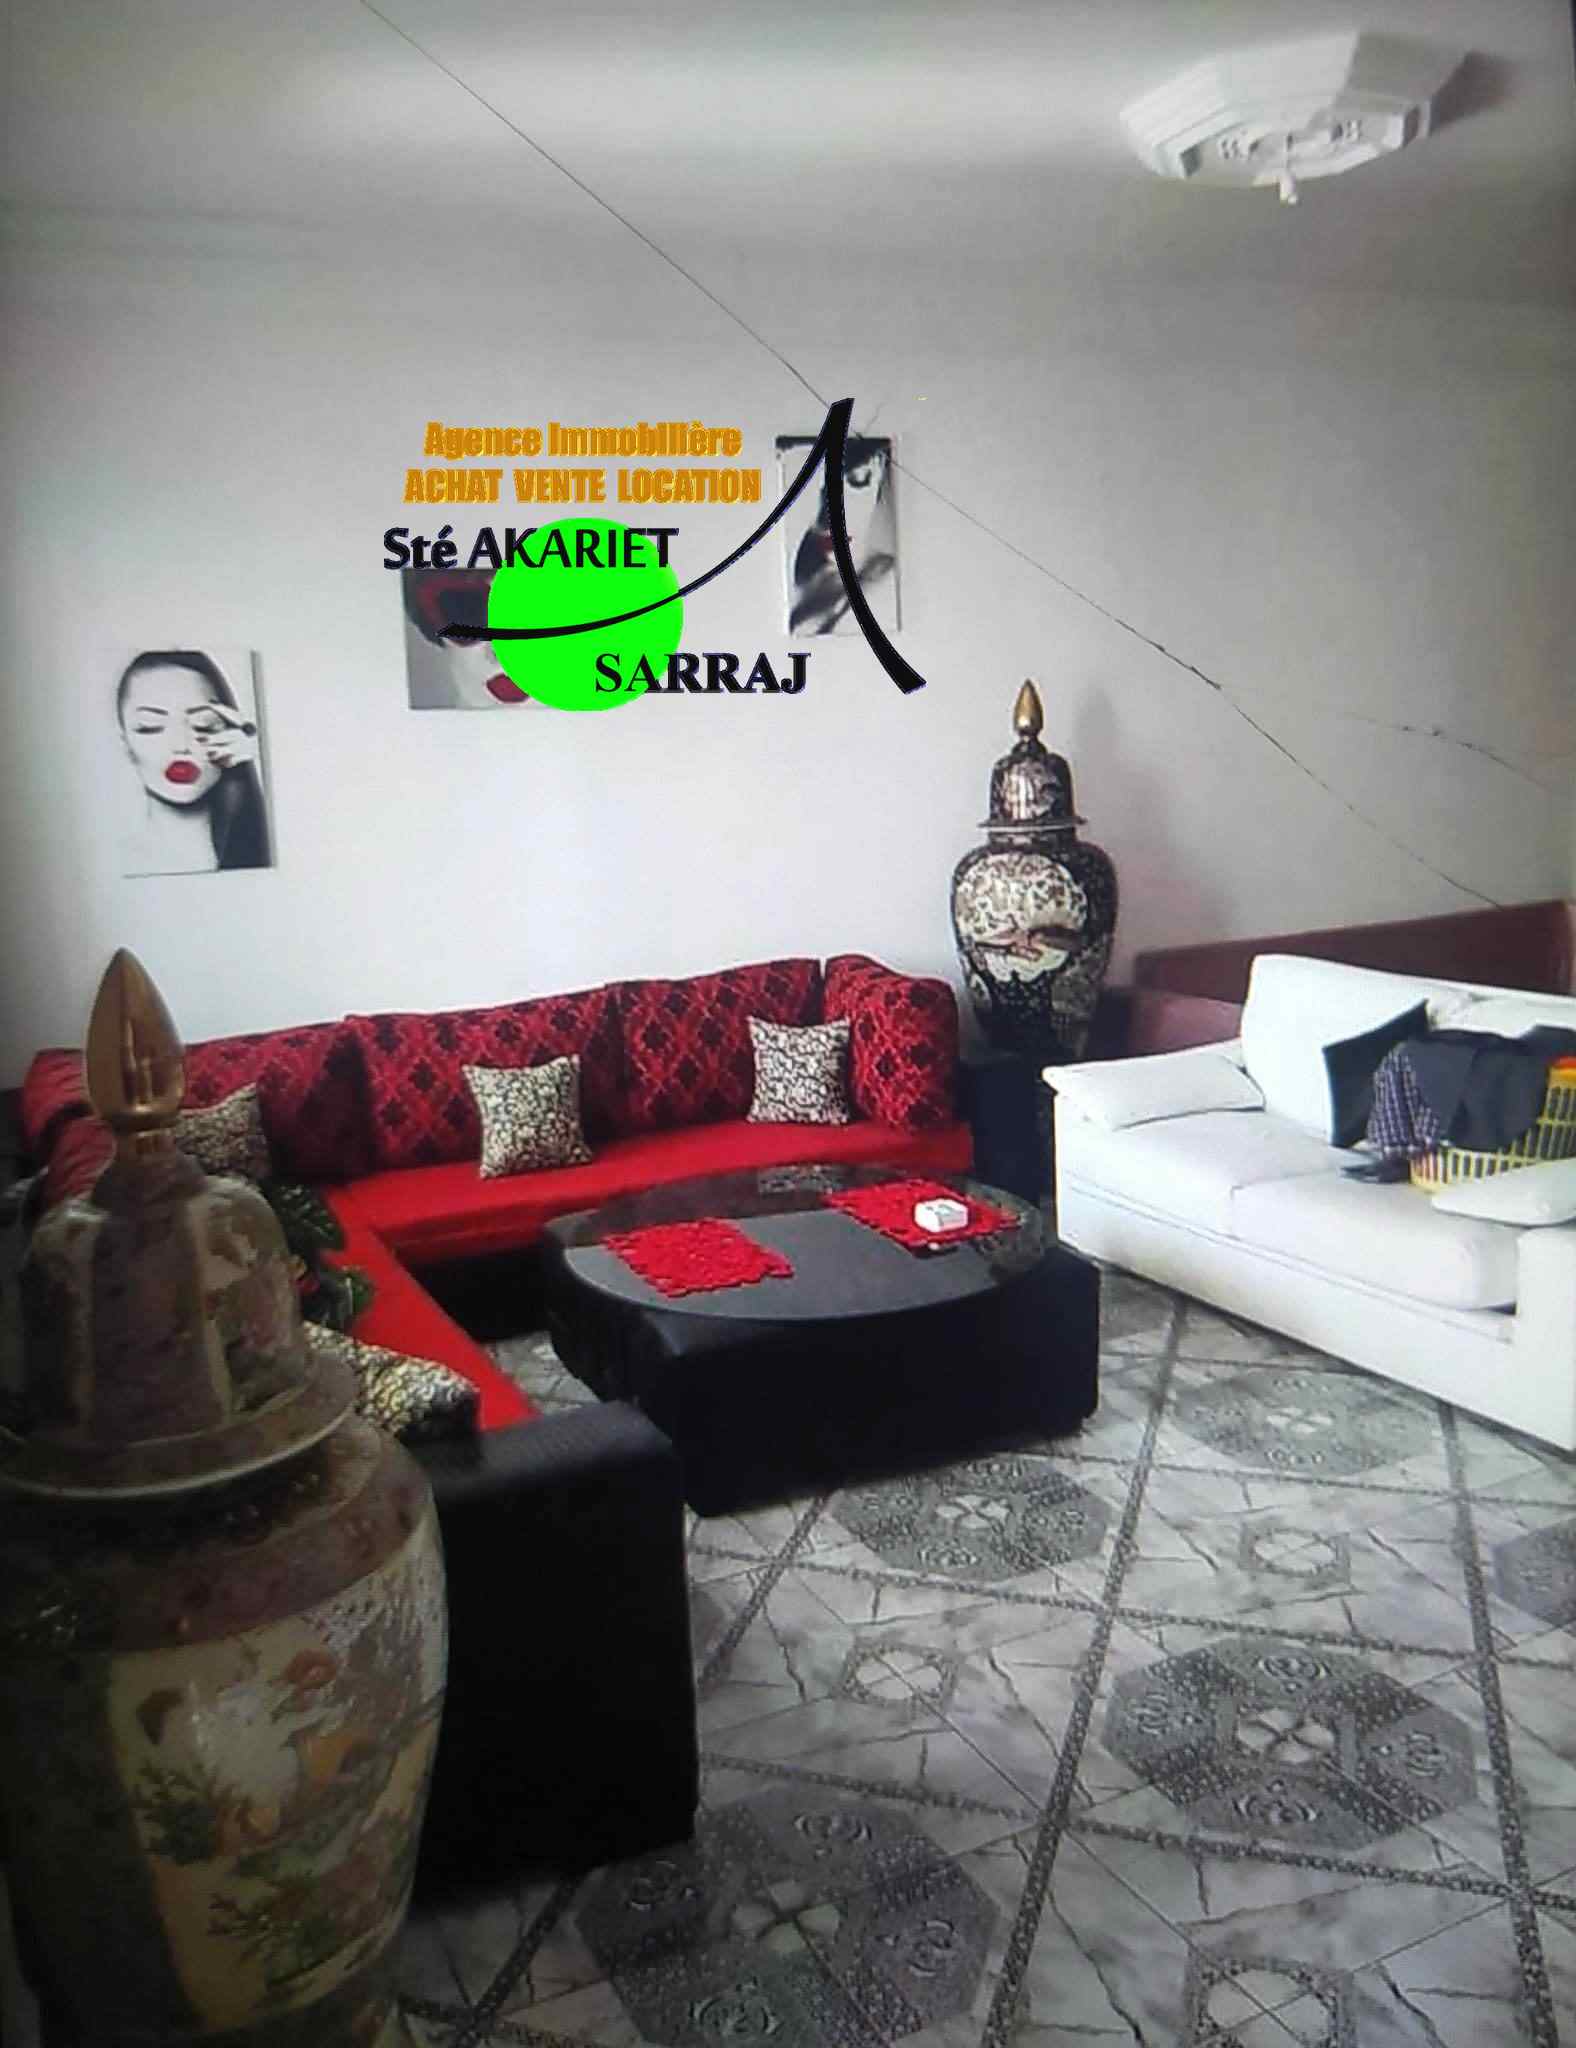 Sousse Jaouhara Sahloul Vente Maisons Villa rz de chausse et 1r tage  sahloul 2